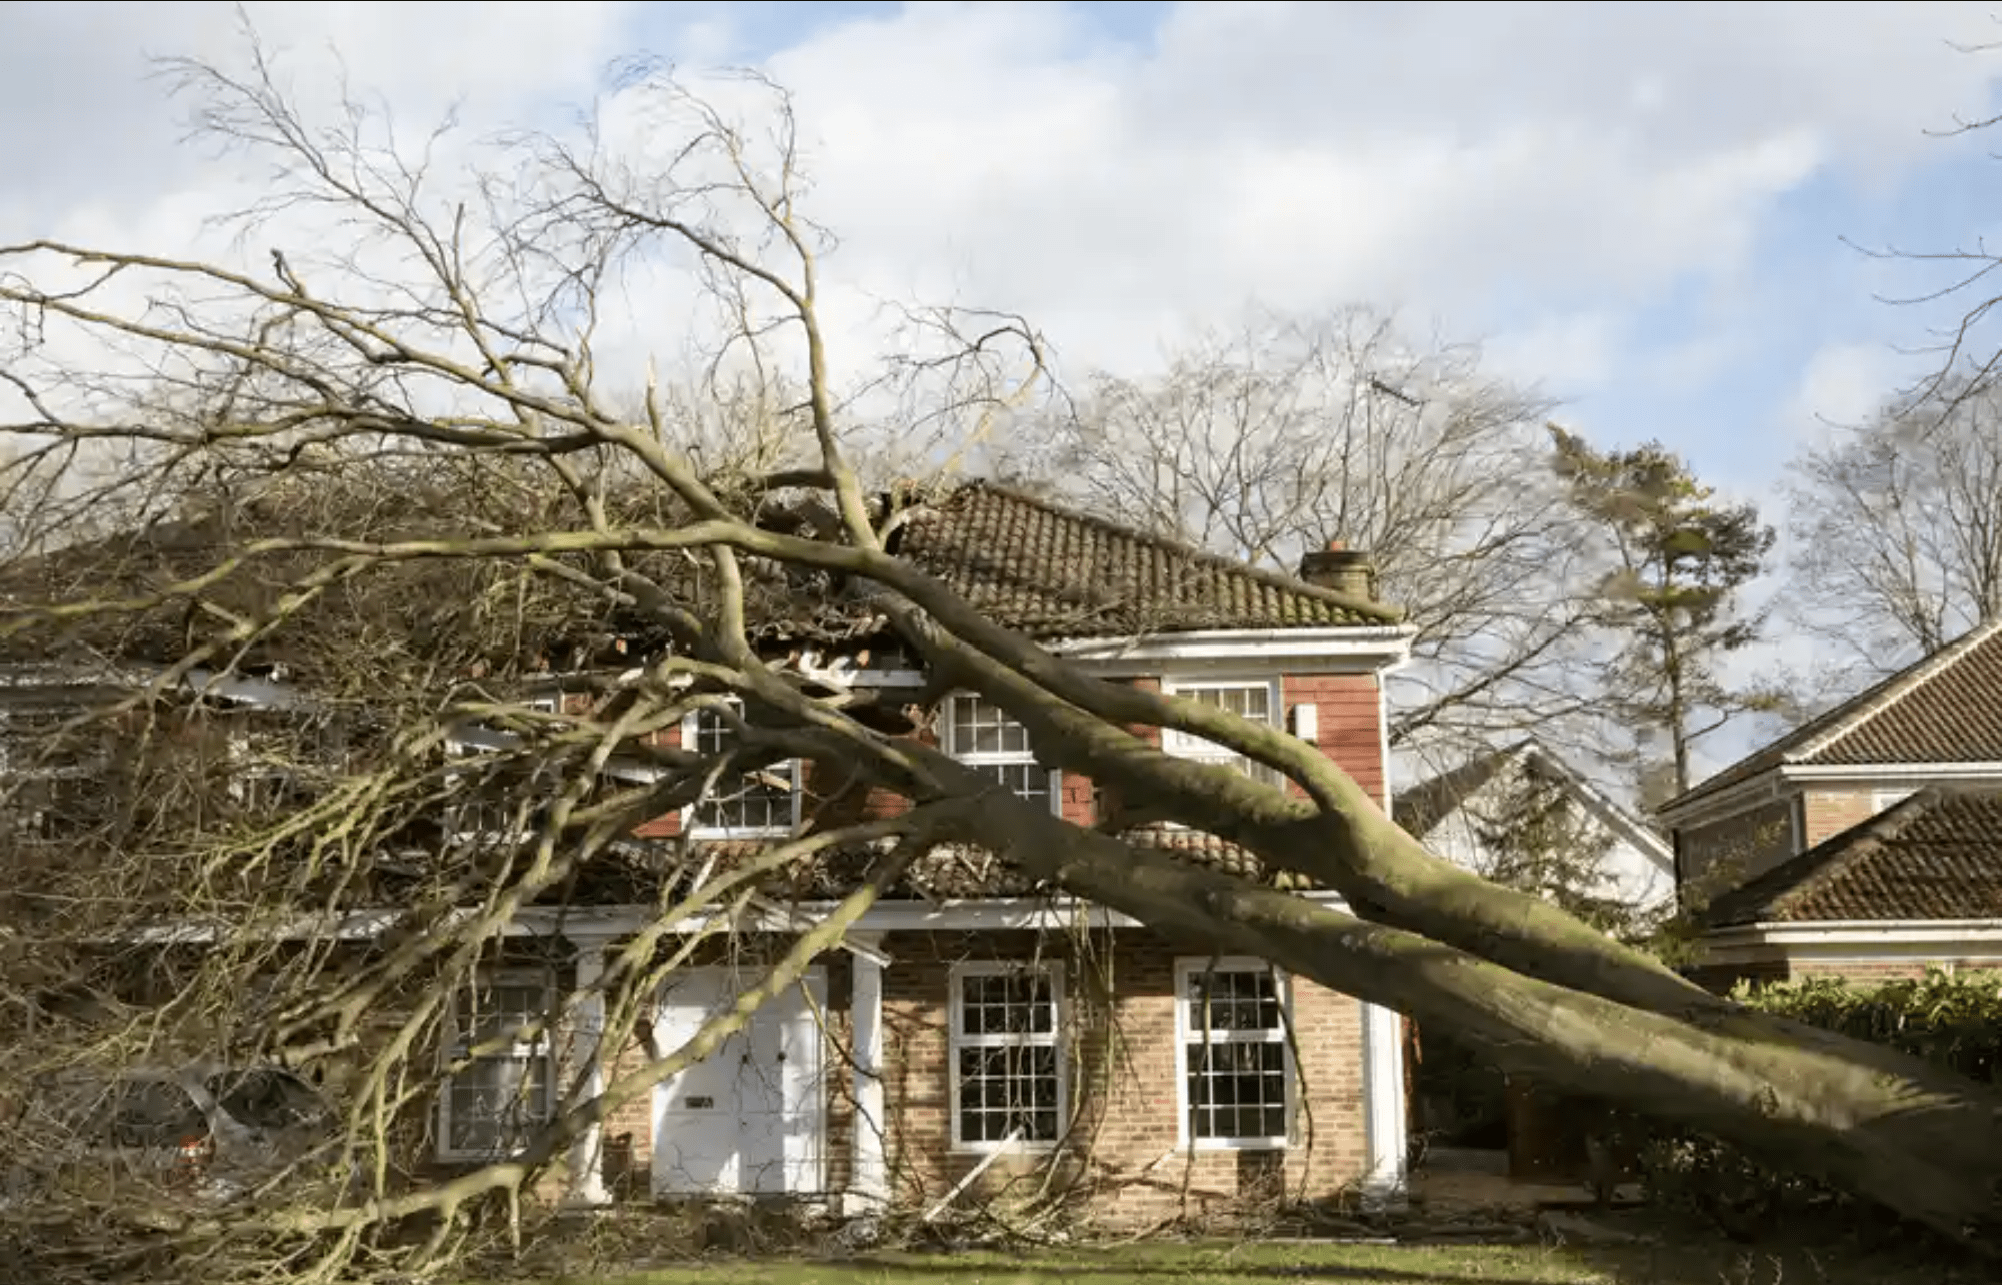 خسارت ناشی از طوفان روز شنبه در جنوب انتاریو و کبک در اغلب موارد تحت پوشش بیمه قرار دارد